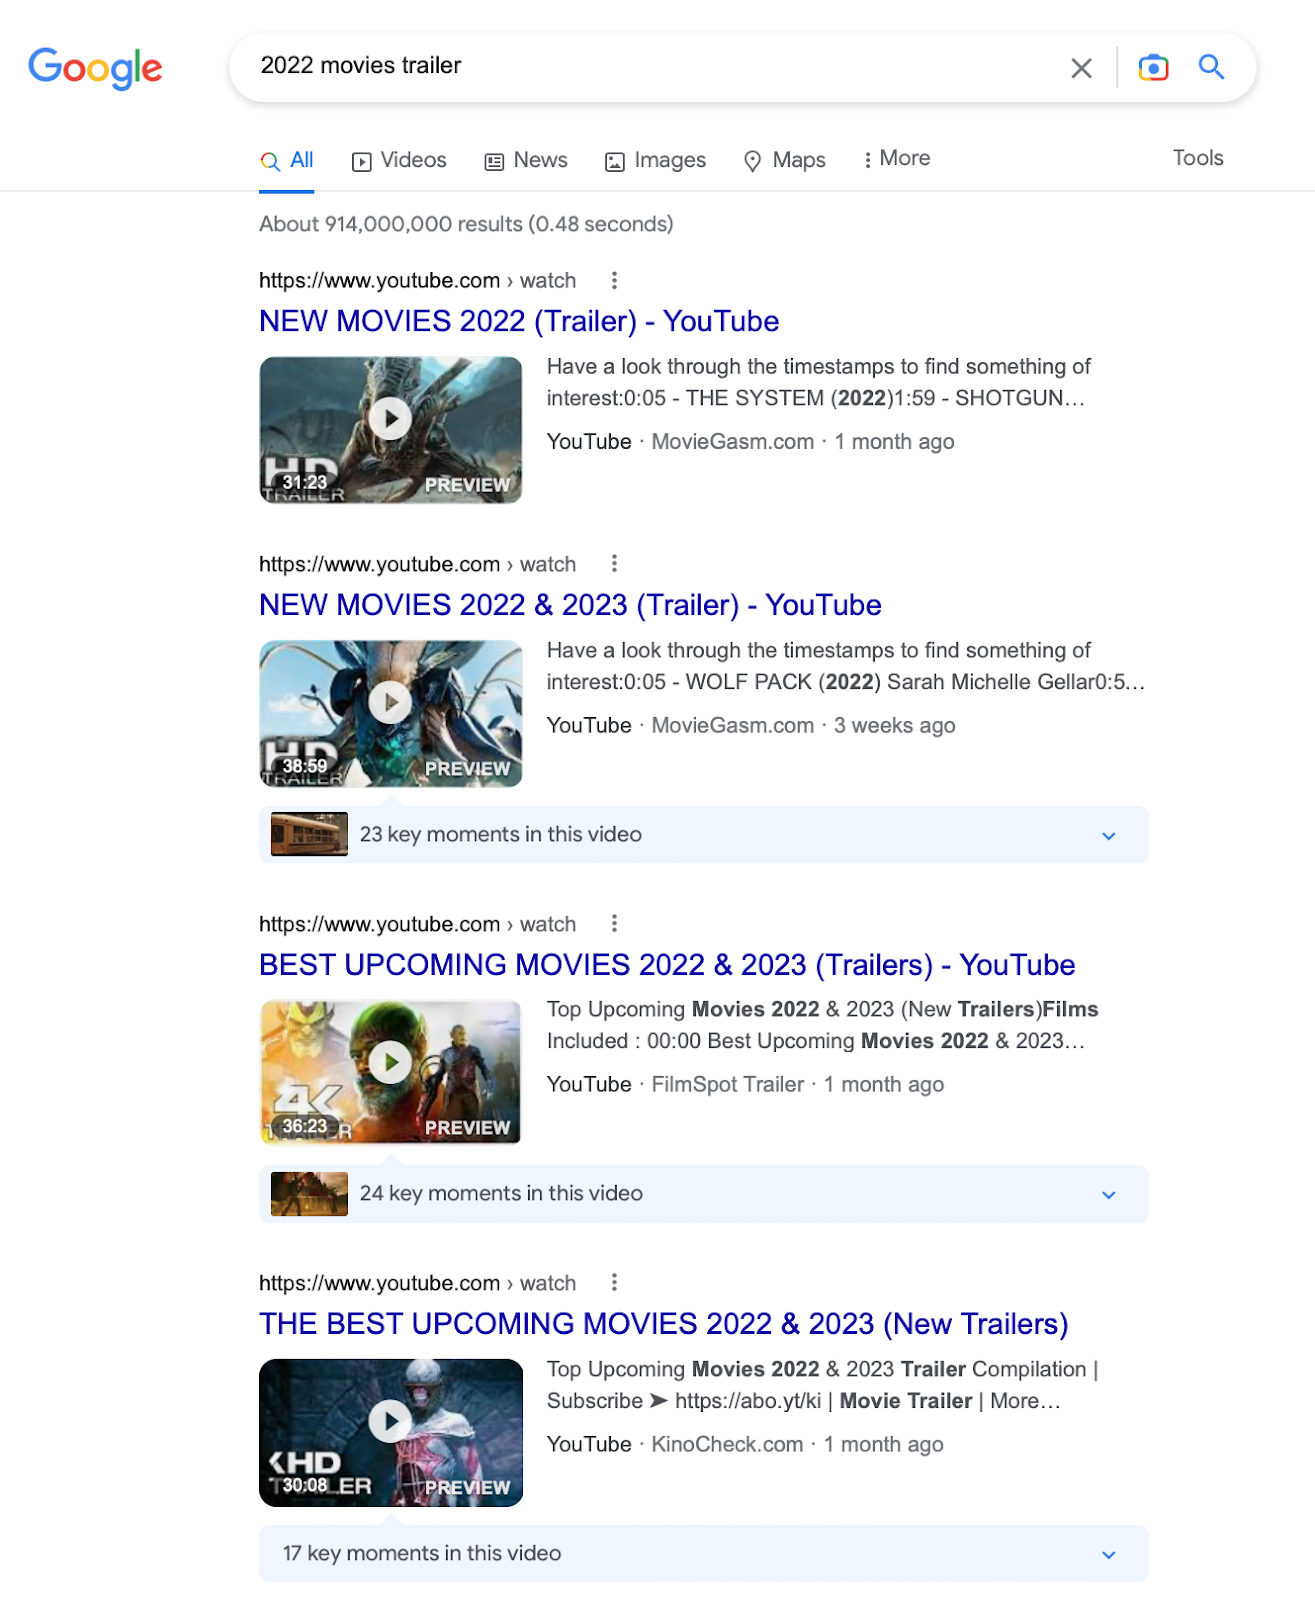 Скриншот для поискового запроса «трейлер фильма 2022 года» в Google